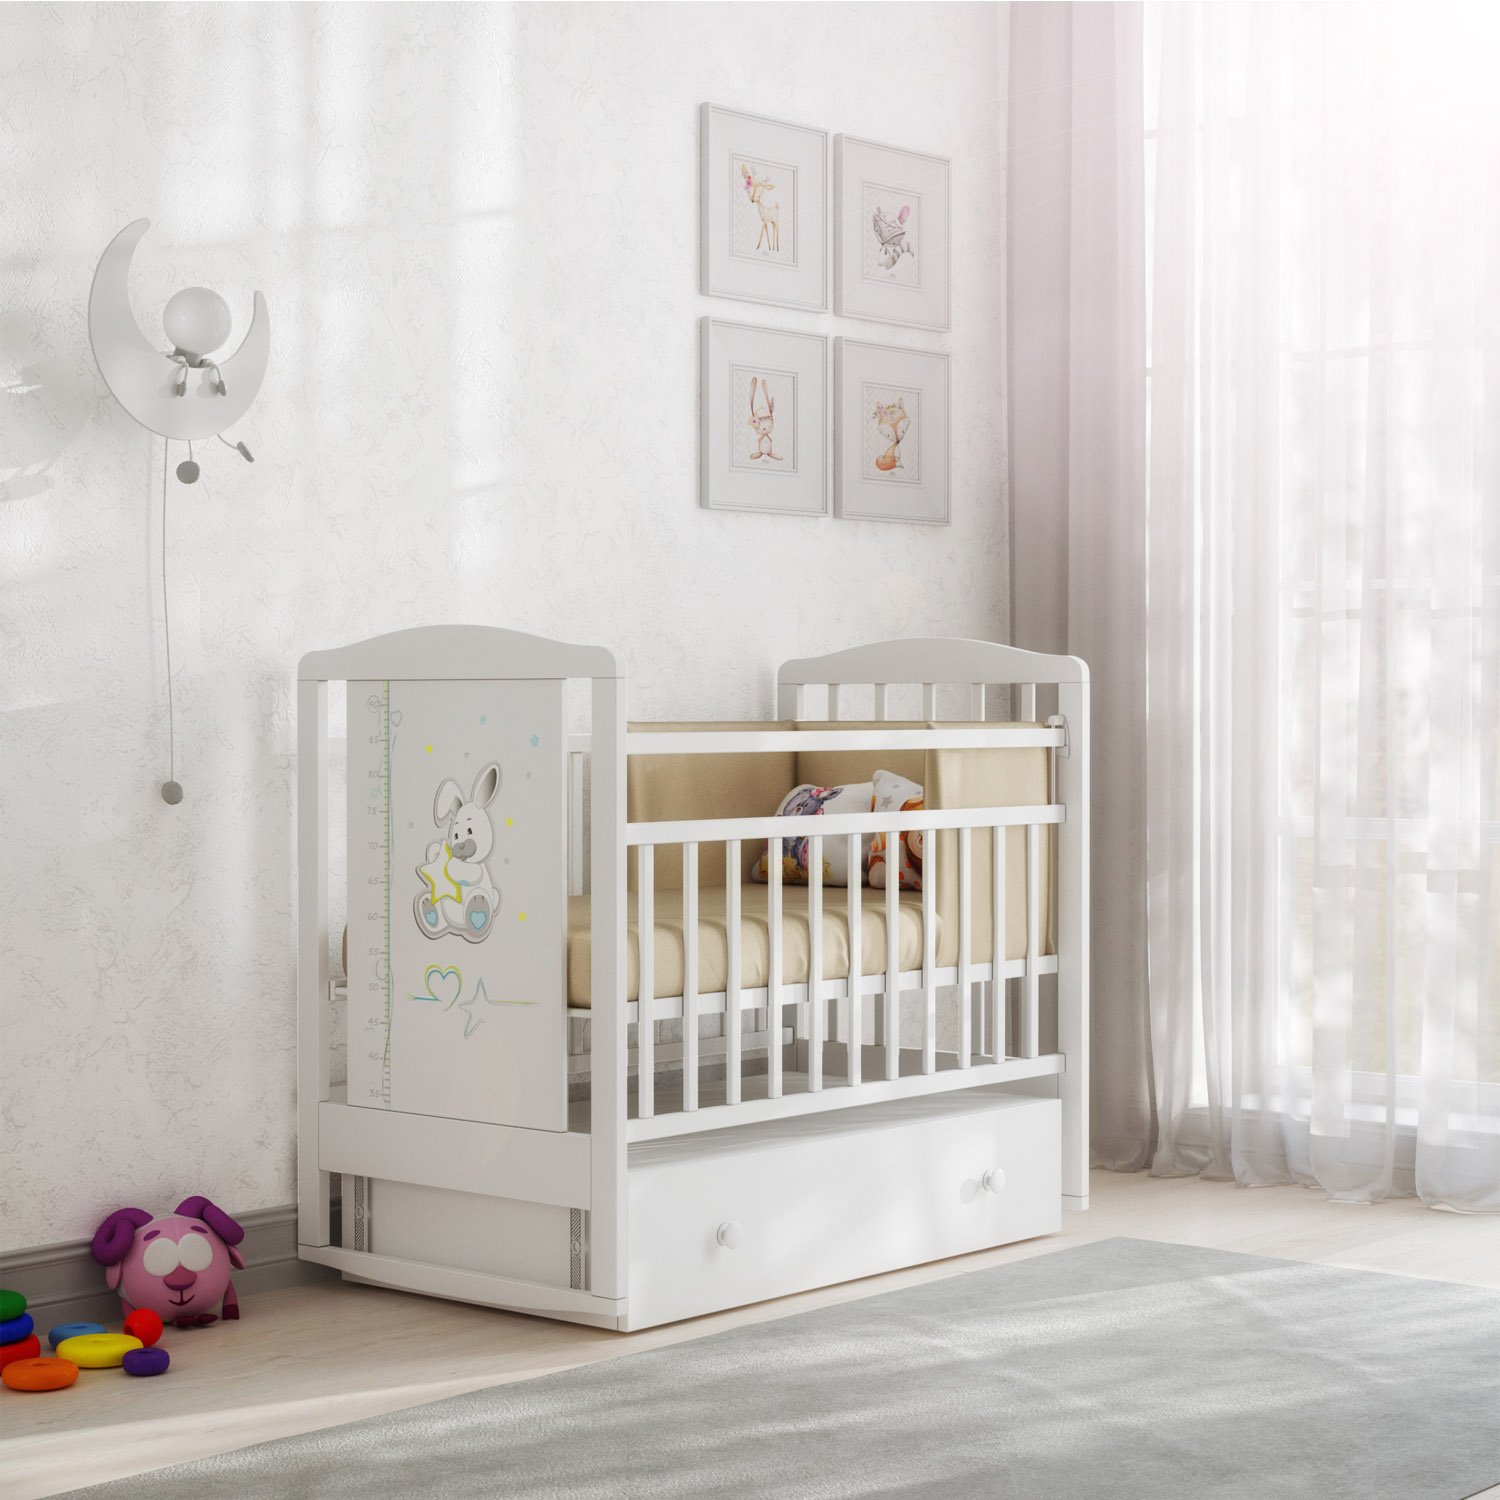 Кровать детская ВДК JOE с ростомером (маятник-ящик)Цвет:белый